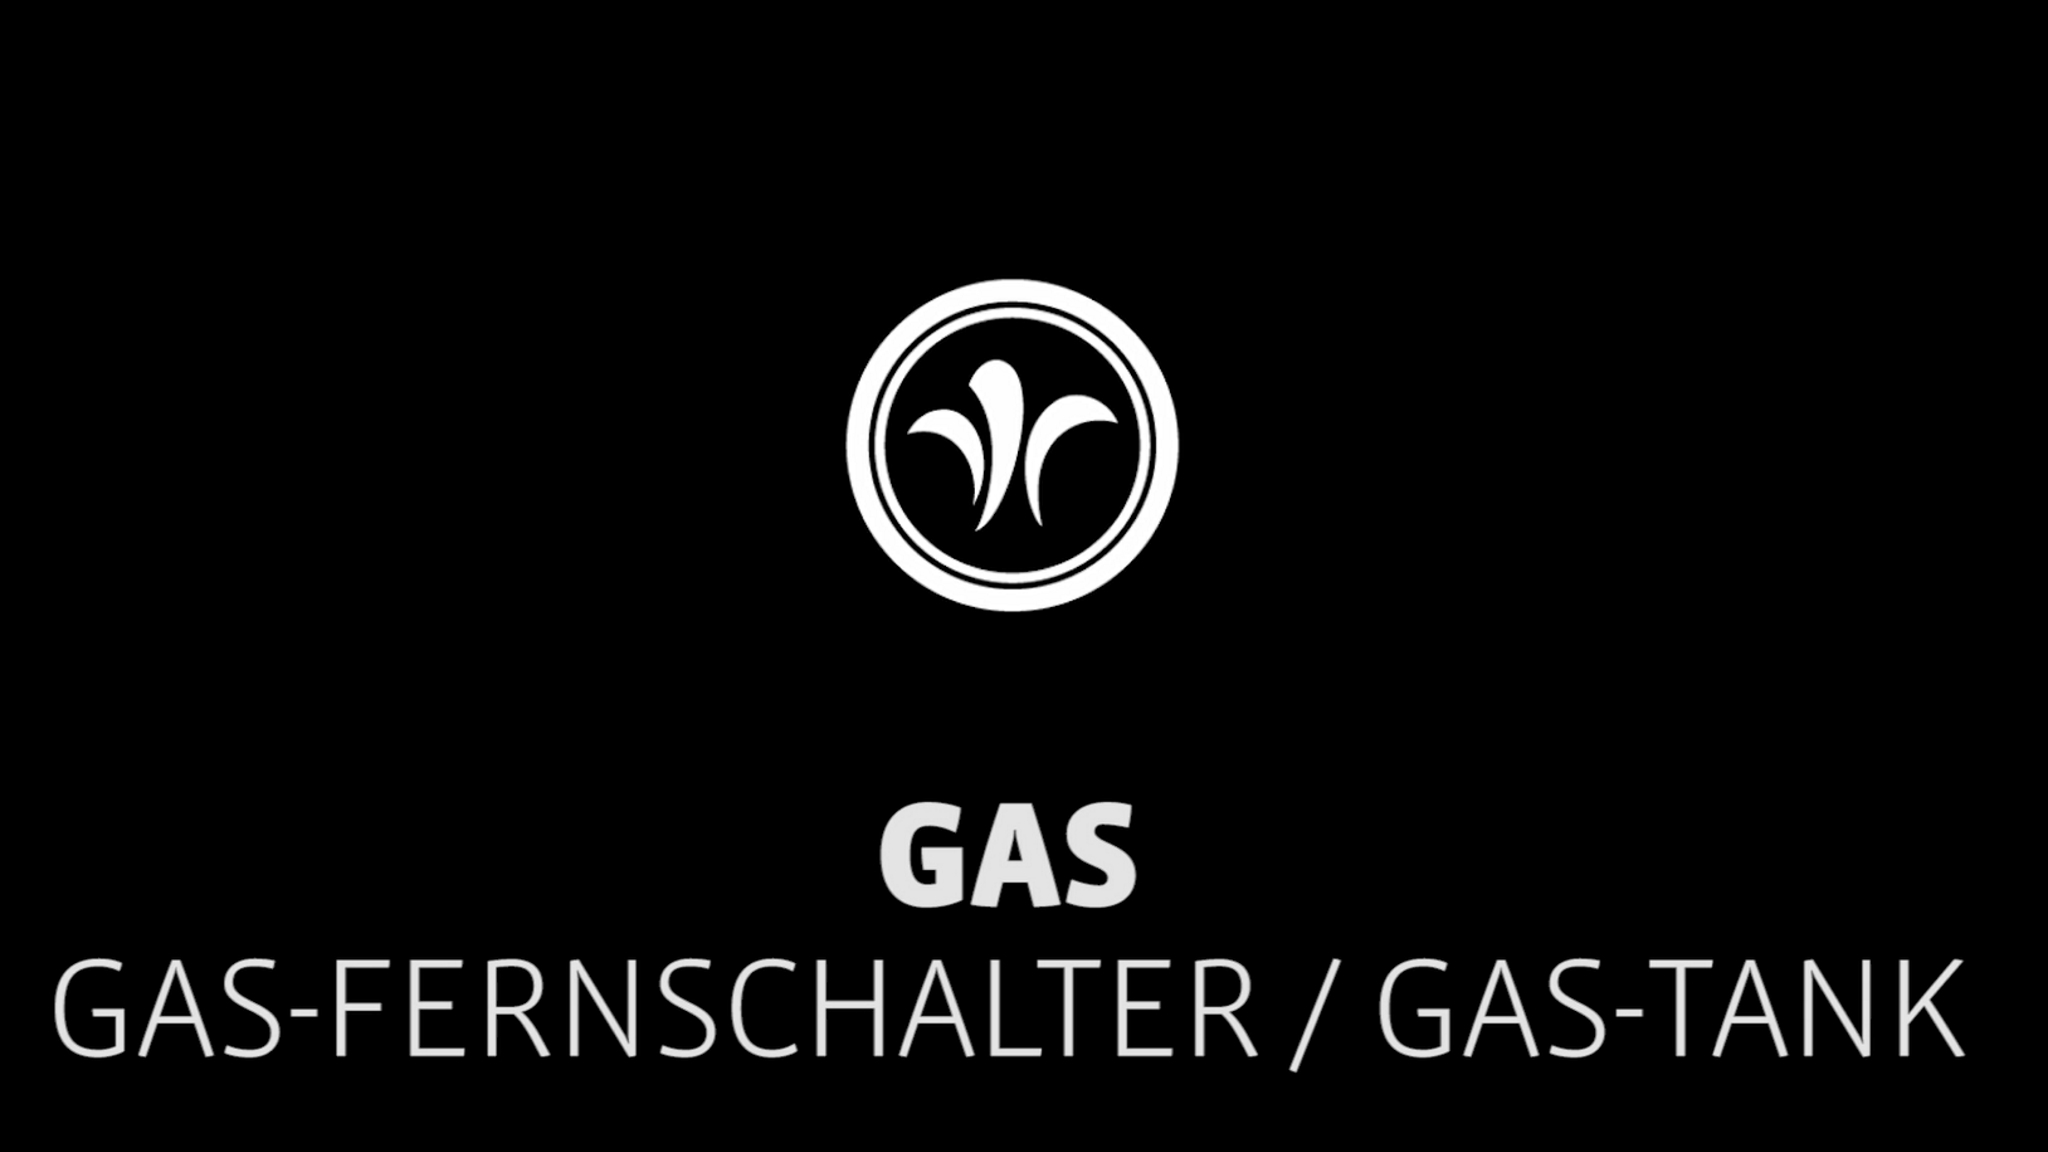 Wohnmobil Gasfernschalter // Niesmann+Bischoff – Luxus Wohnmobil (Modell FLAIR) // 2019 // G4
